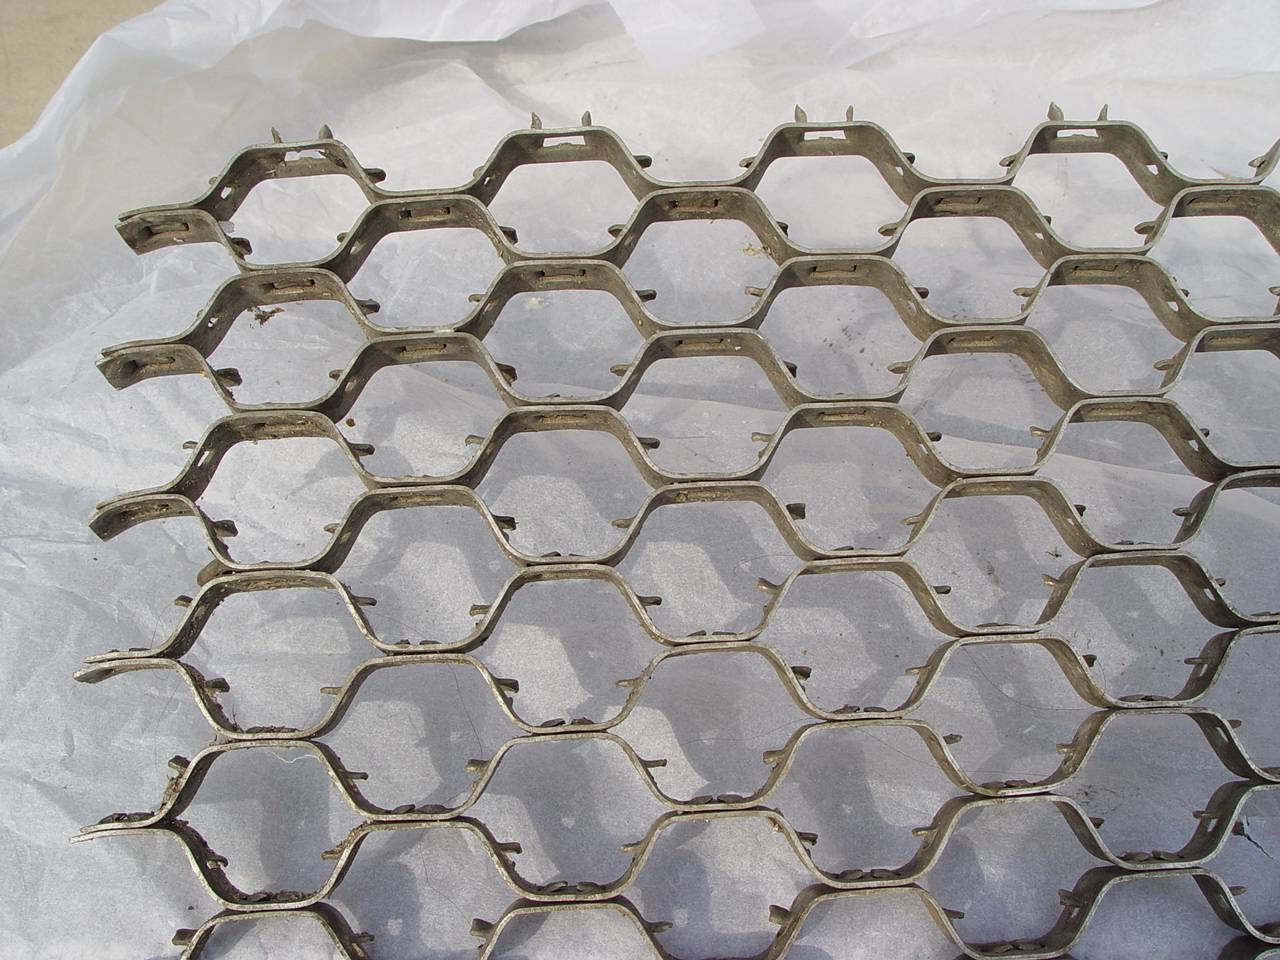 Buy cheap stainless steel tortoiseshell net product